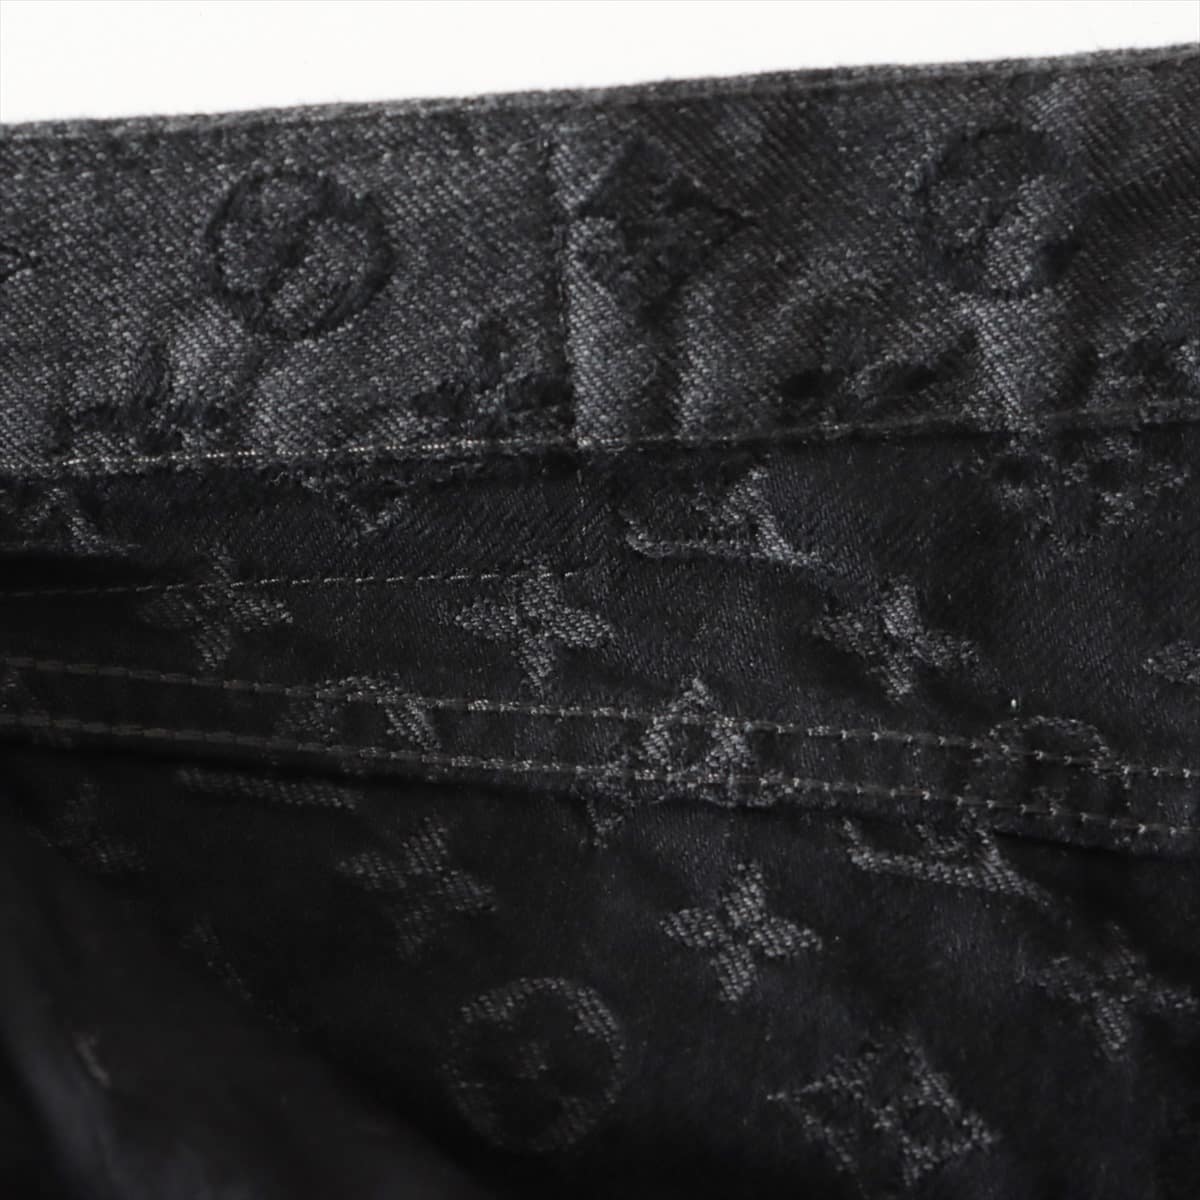 Louis Vuitton x NBA Cotton Denim pants 34 Men's Black  HKD05WZNY Monogram